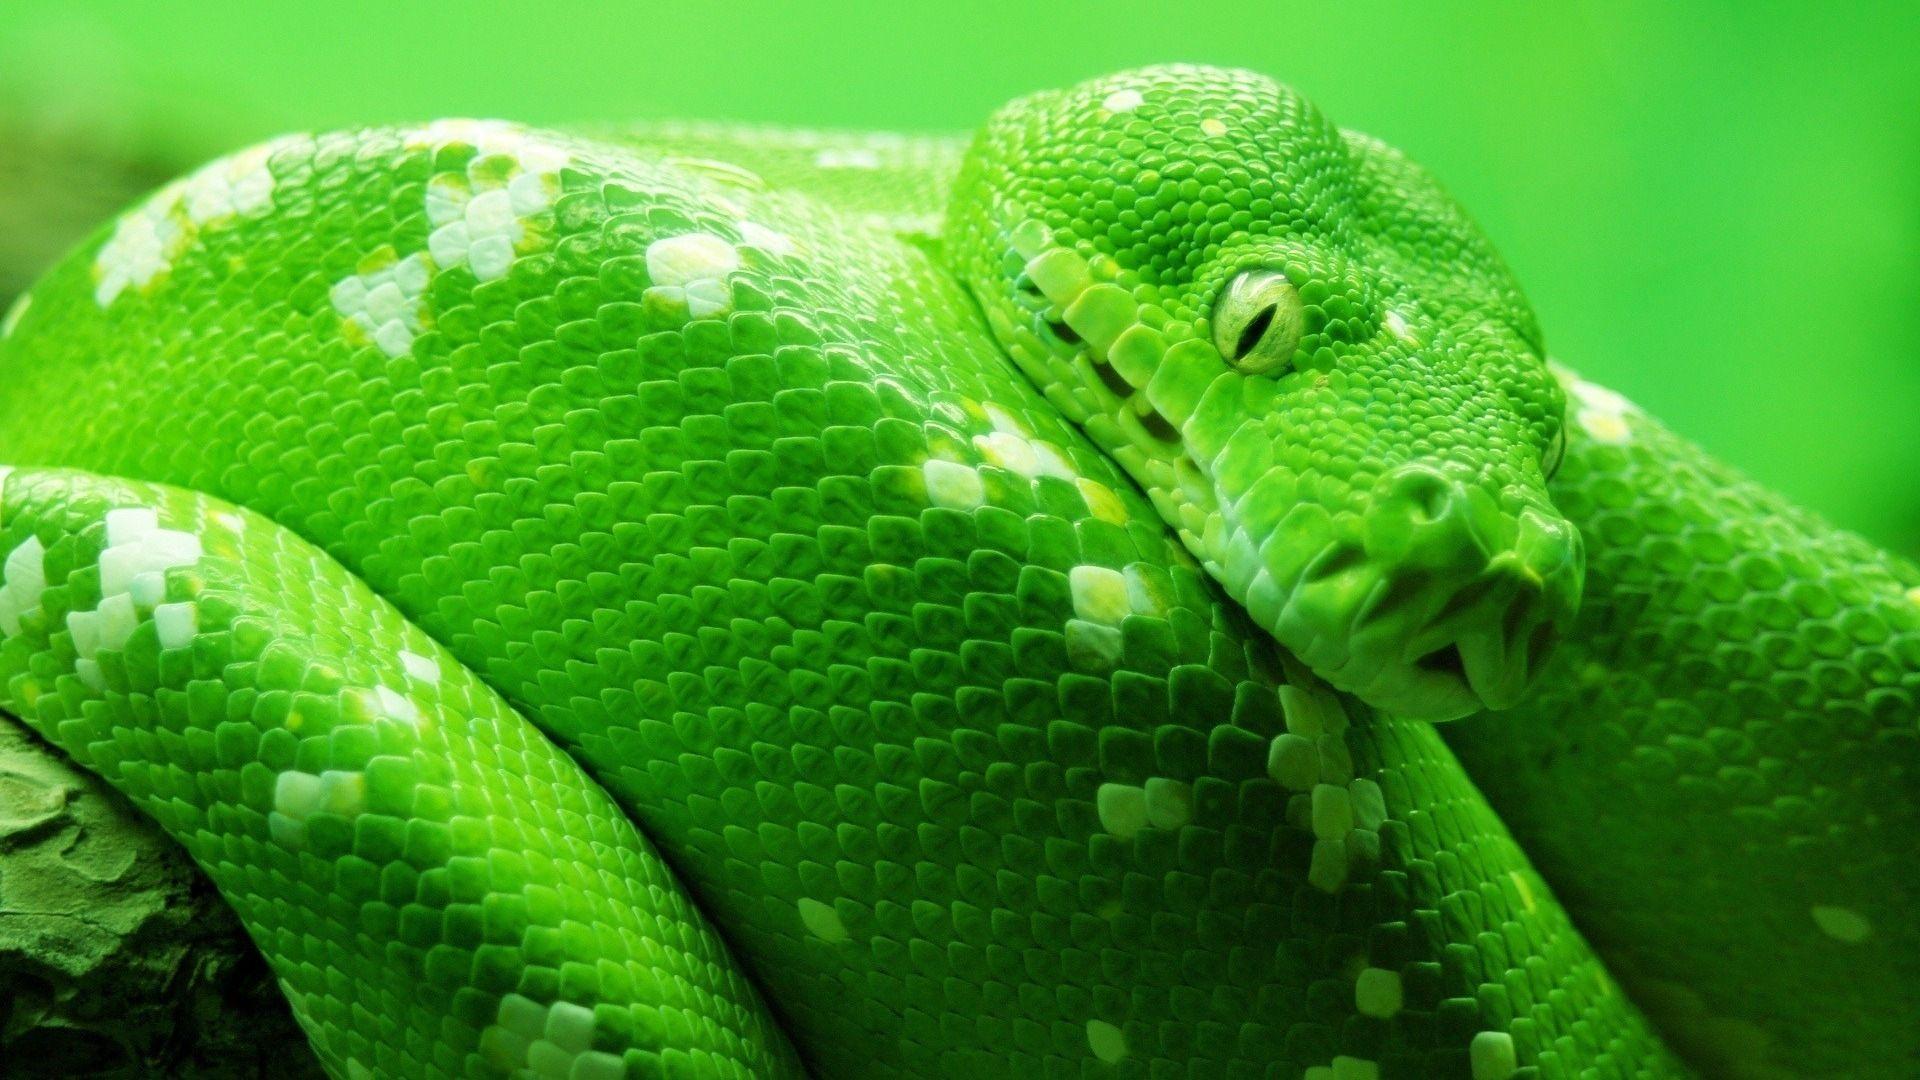 Green Snake Wide Wallpaper 49373. Best Free Desktop HD Wallpaper